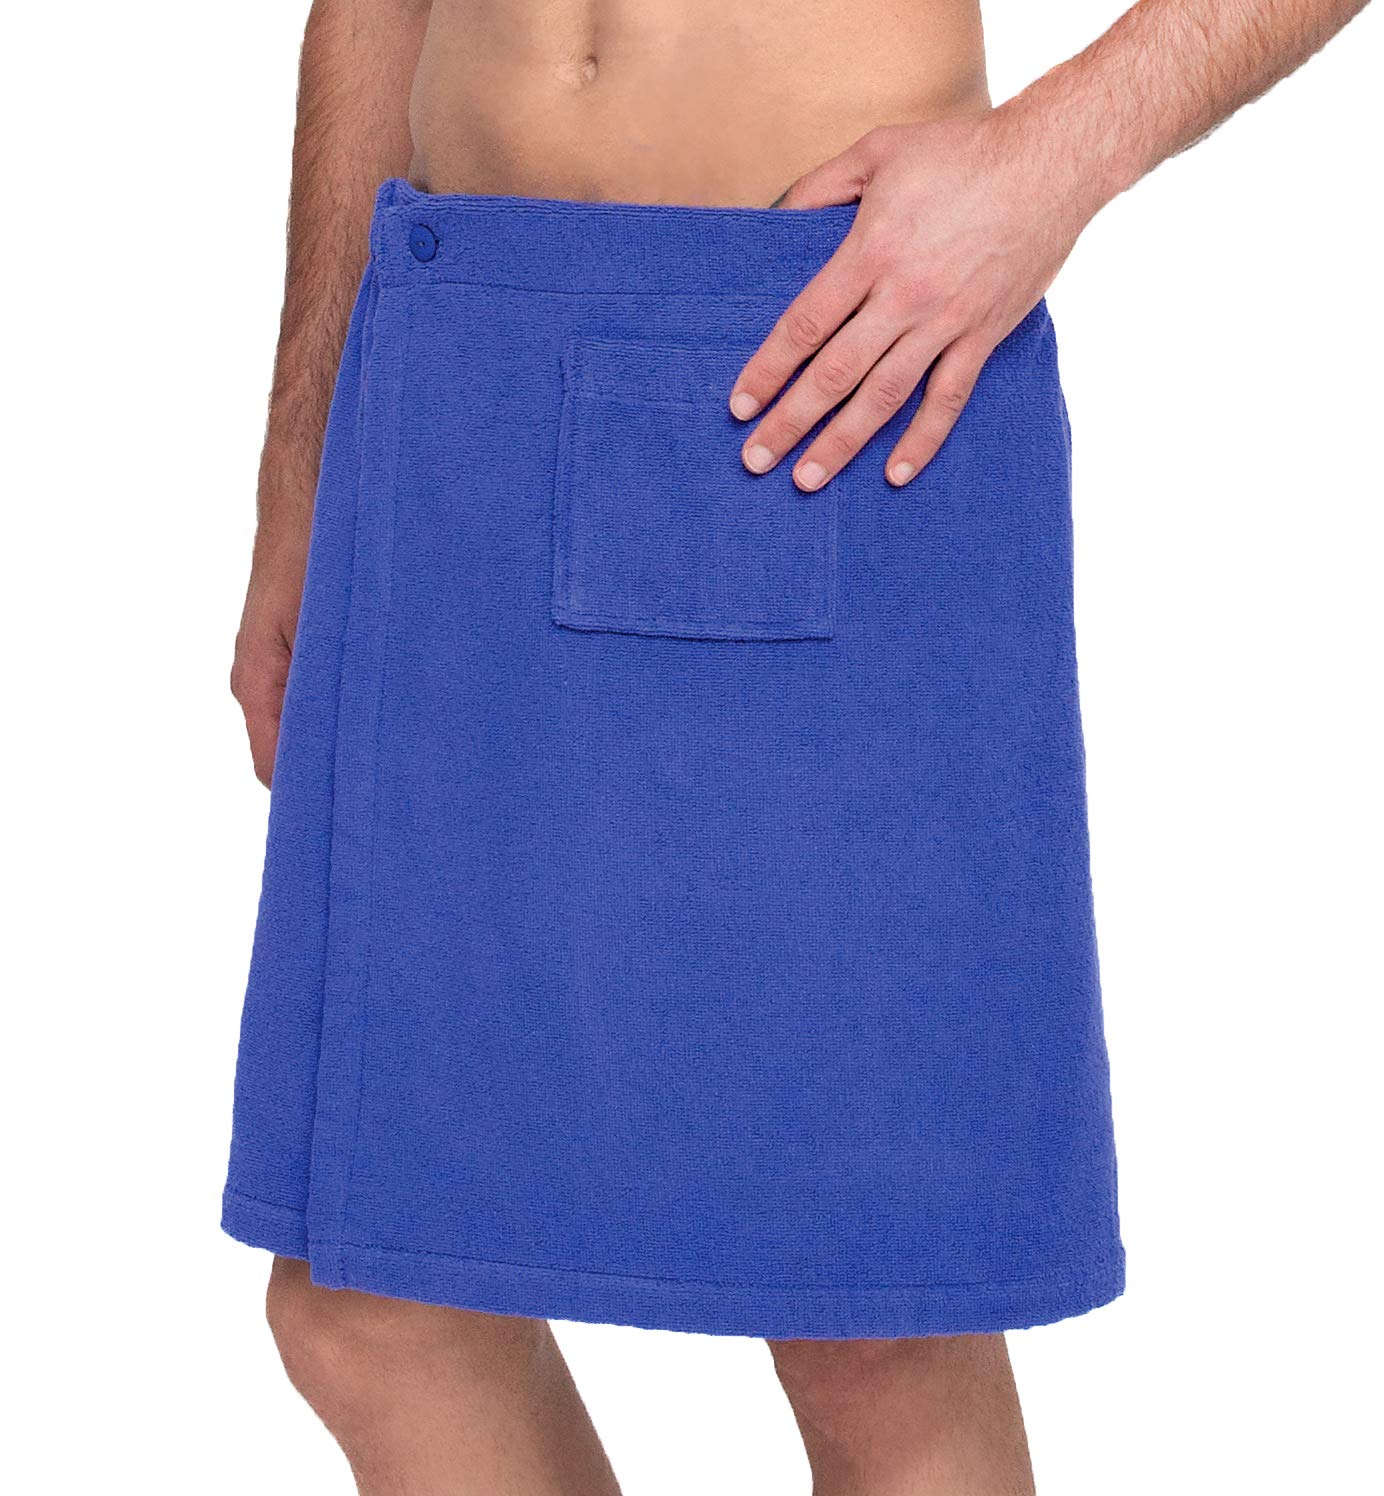 Lashuma Männer Saunakilt Blau, Baumwoll Saunarock mit Tasche und Knöpfen, anpassbarer Sauna Sarong Länge: 52 cm